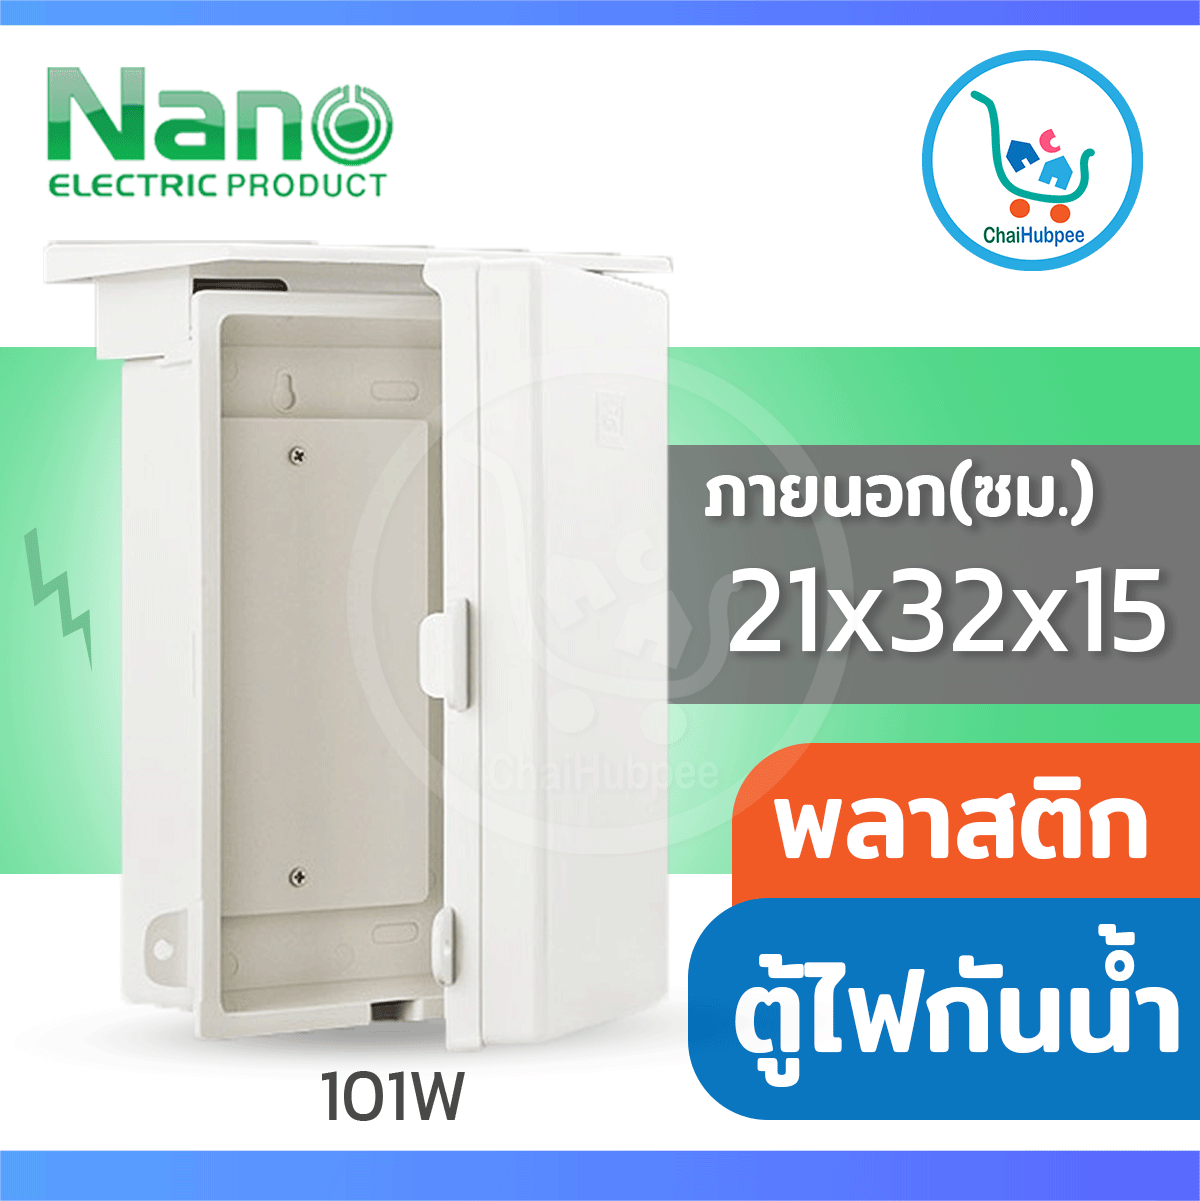 ตู้ไฟ ตู้ไฟฟ้า ตู้ไฟกันน้ำ ตู้ไฟพลาสติก ตู้ไฟฟ้ากันน้ำ ฝาทึบ เปิด-ปิดได้ (NANO-101W) ขนาด 21 x 32 x 15 ซม.